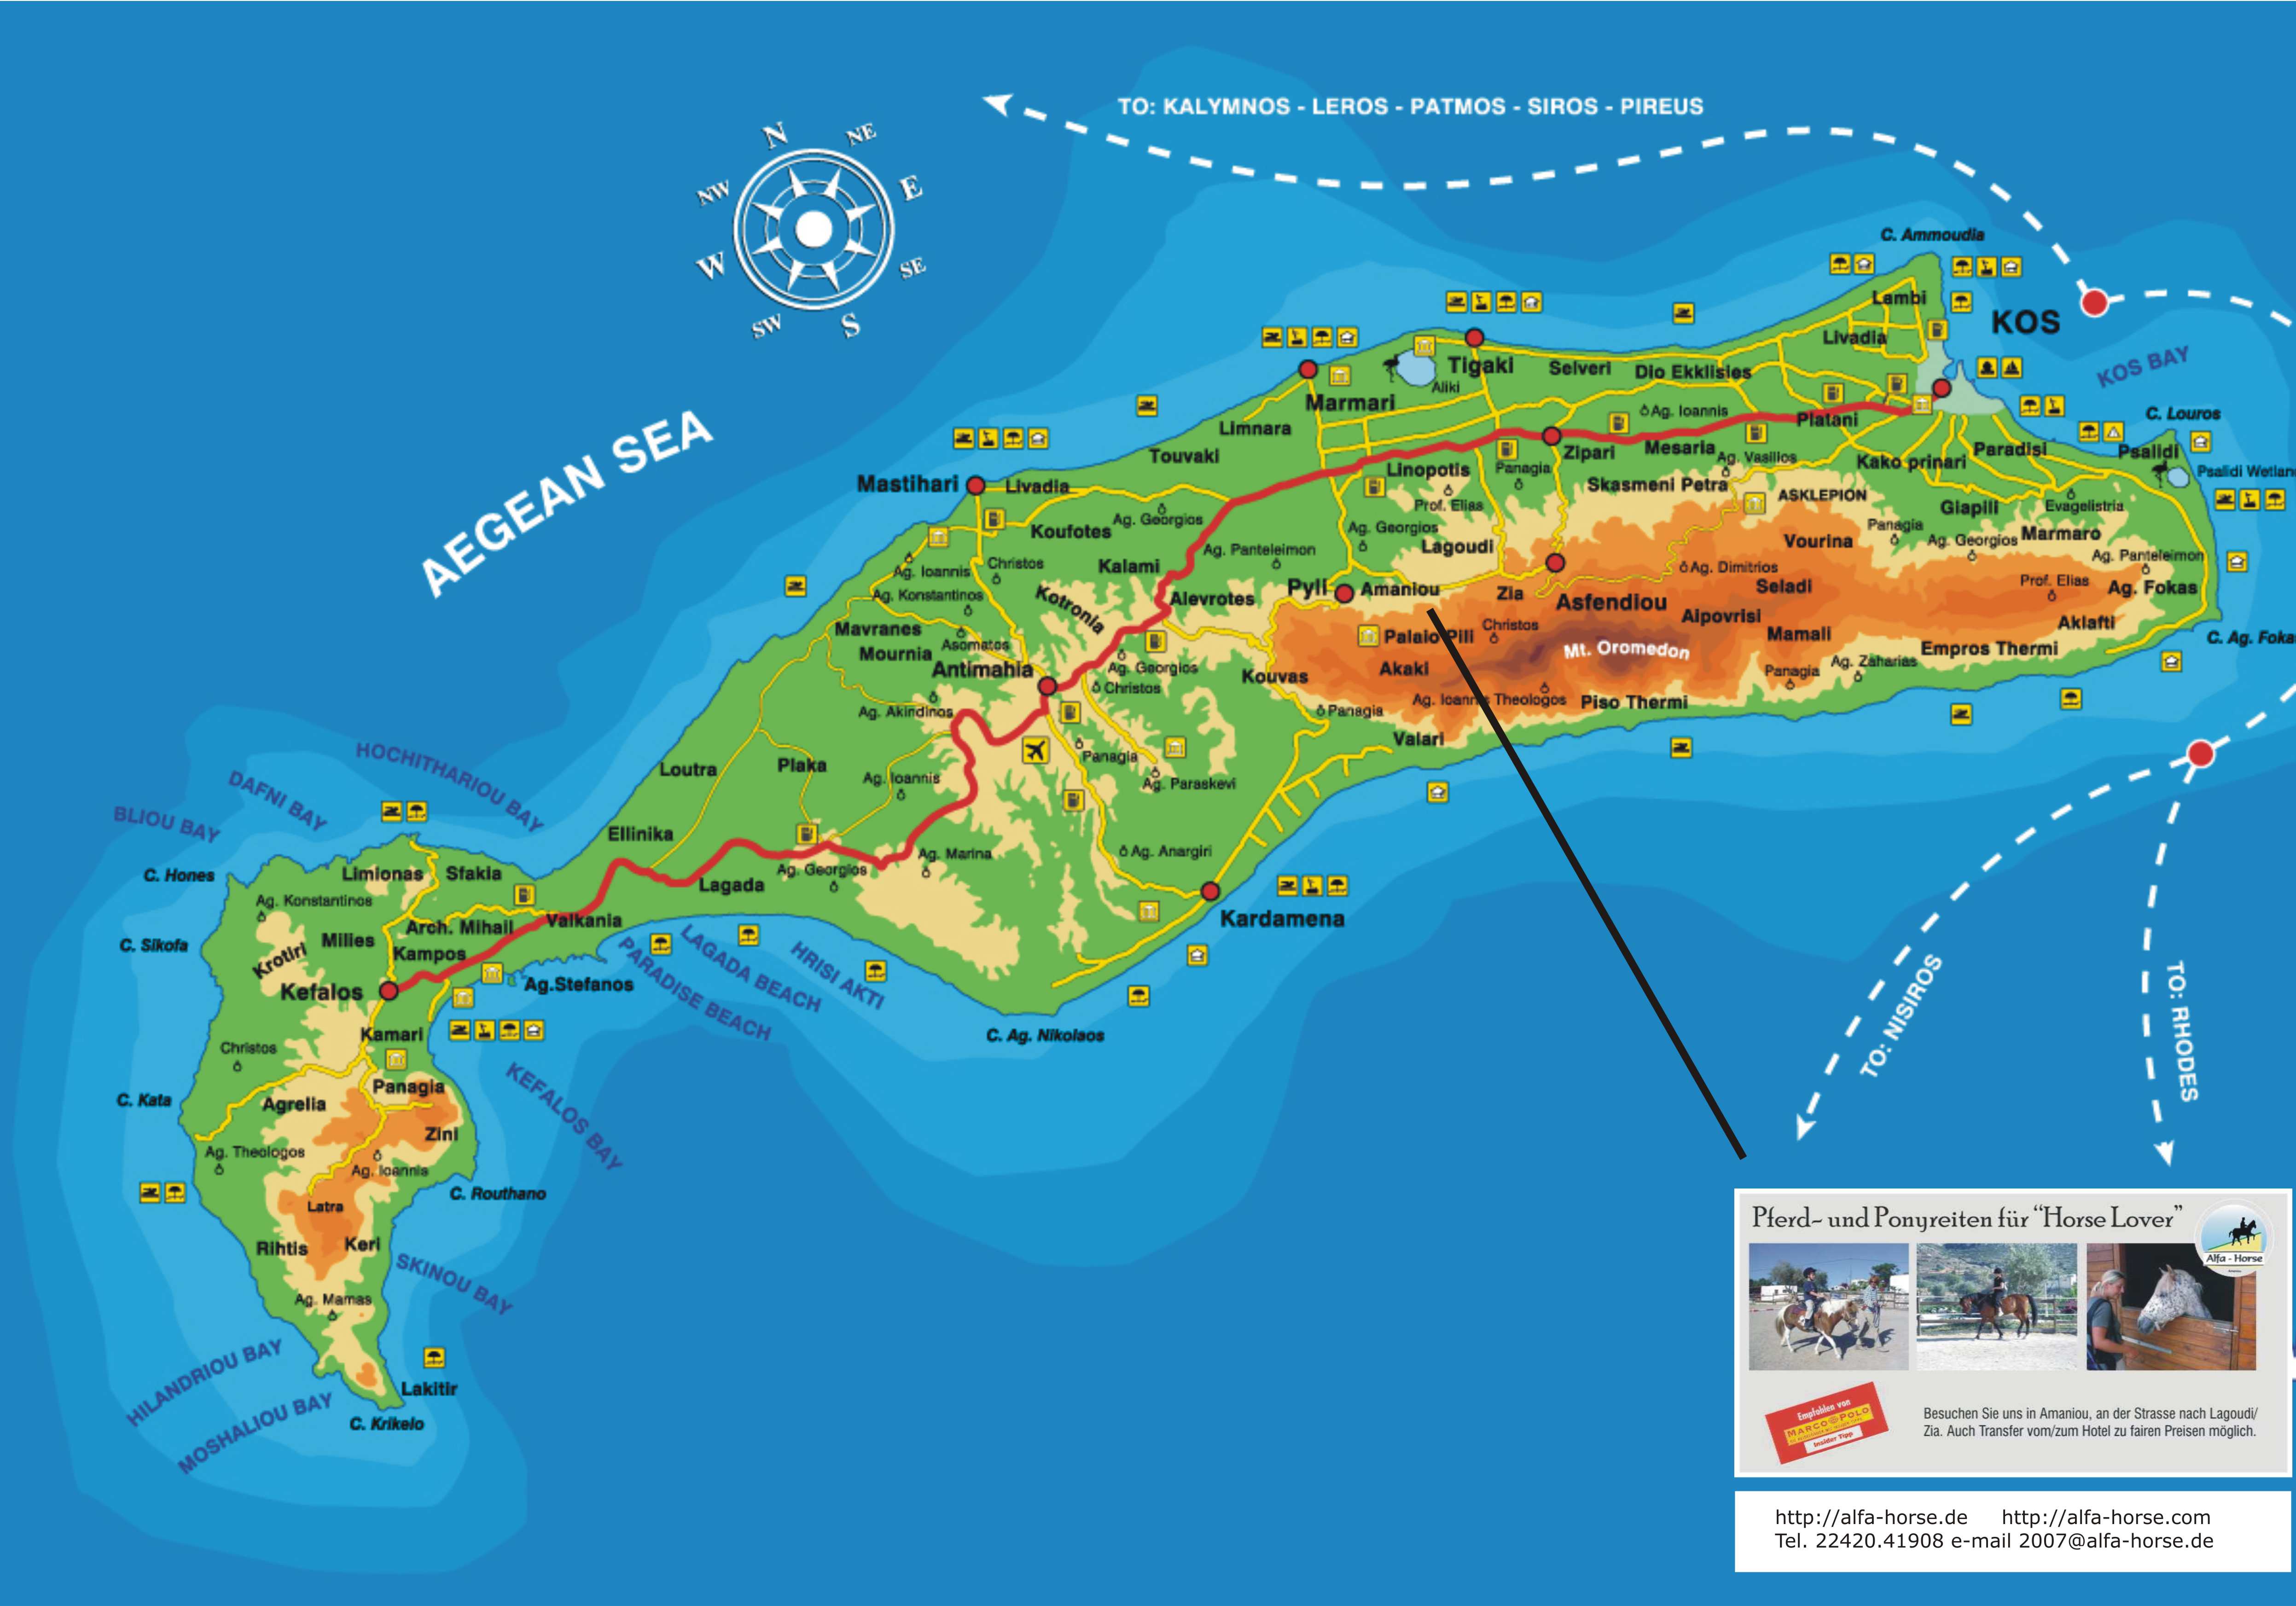 Stadtplan von Kos | Detaillierte gedruckte Karten von Kos, Griechenland